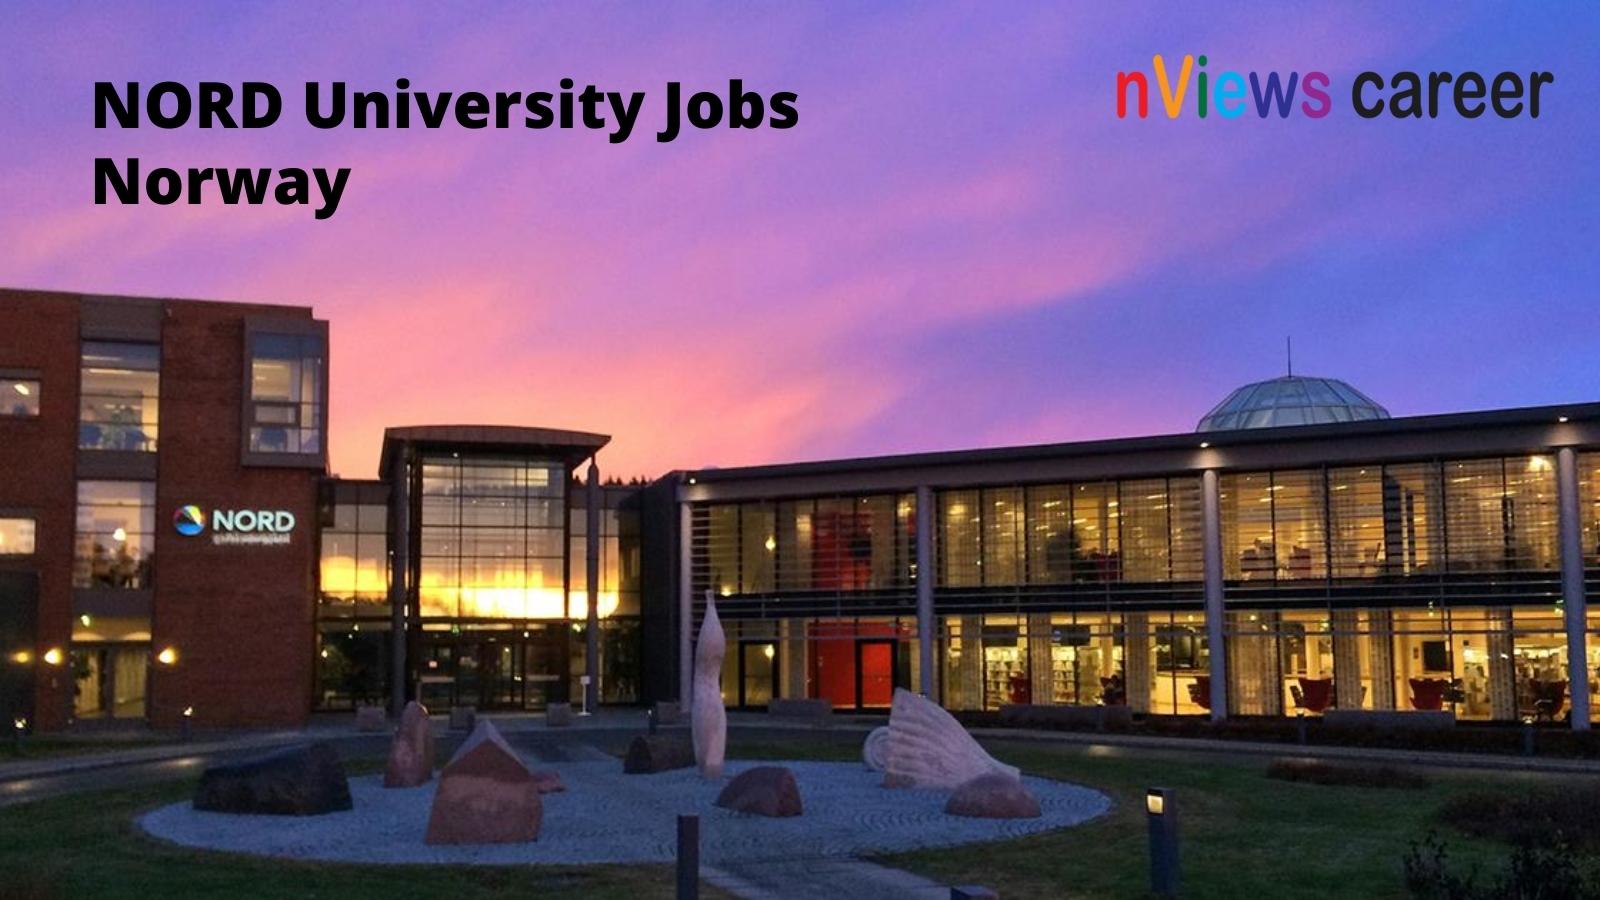 Nord University Jobs Norway Bodo Campus Building Entrance